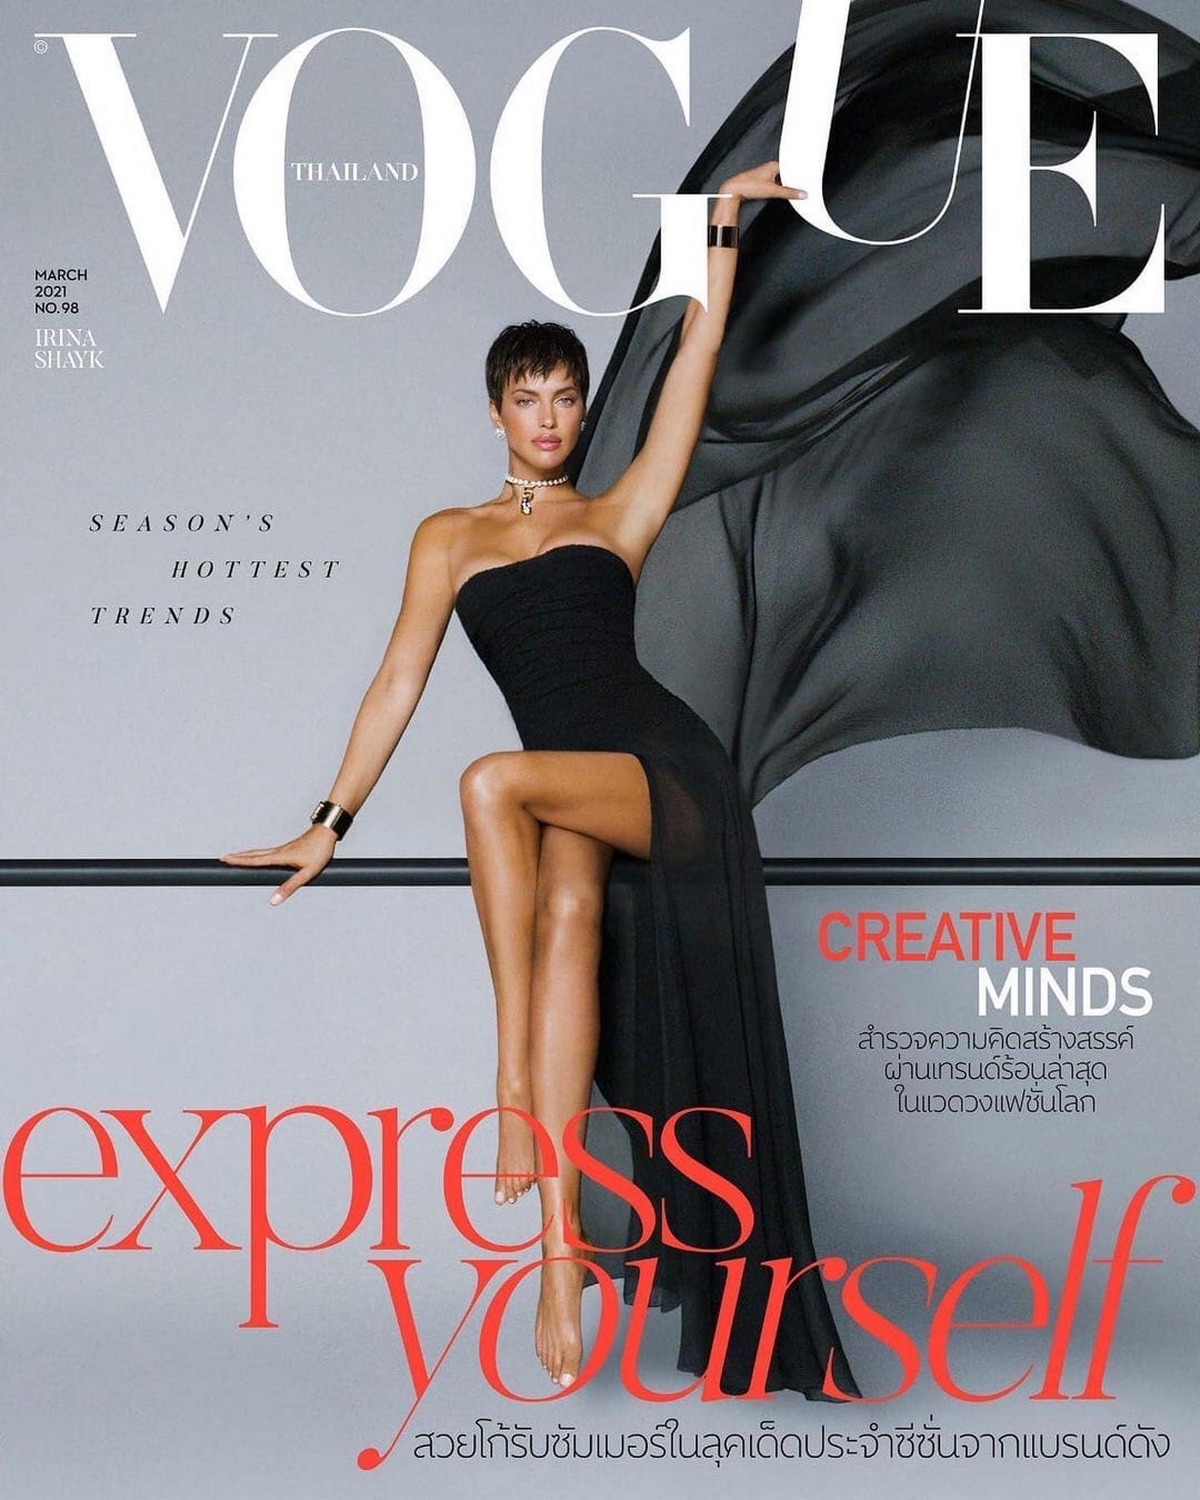 Ирина Шейк в меховых трусиках на обложке Vogue: модель с шокирующим нарядом